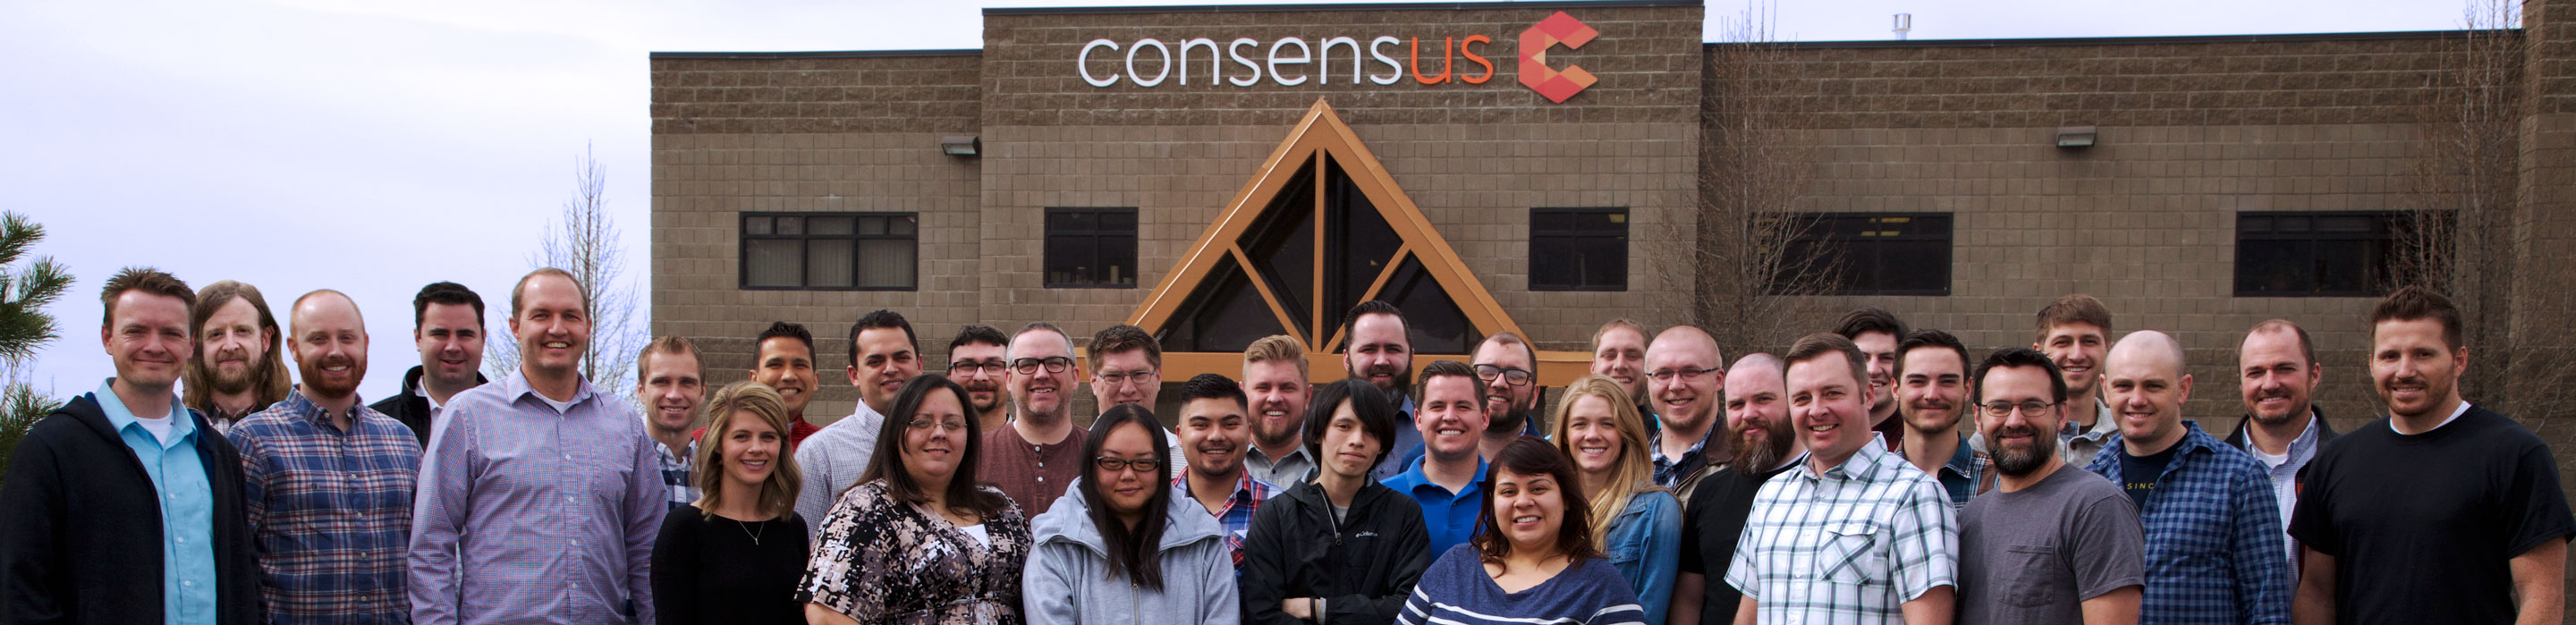 CONSENSUS -company-photo